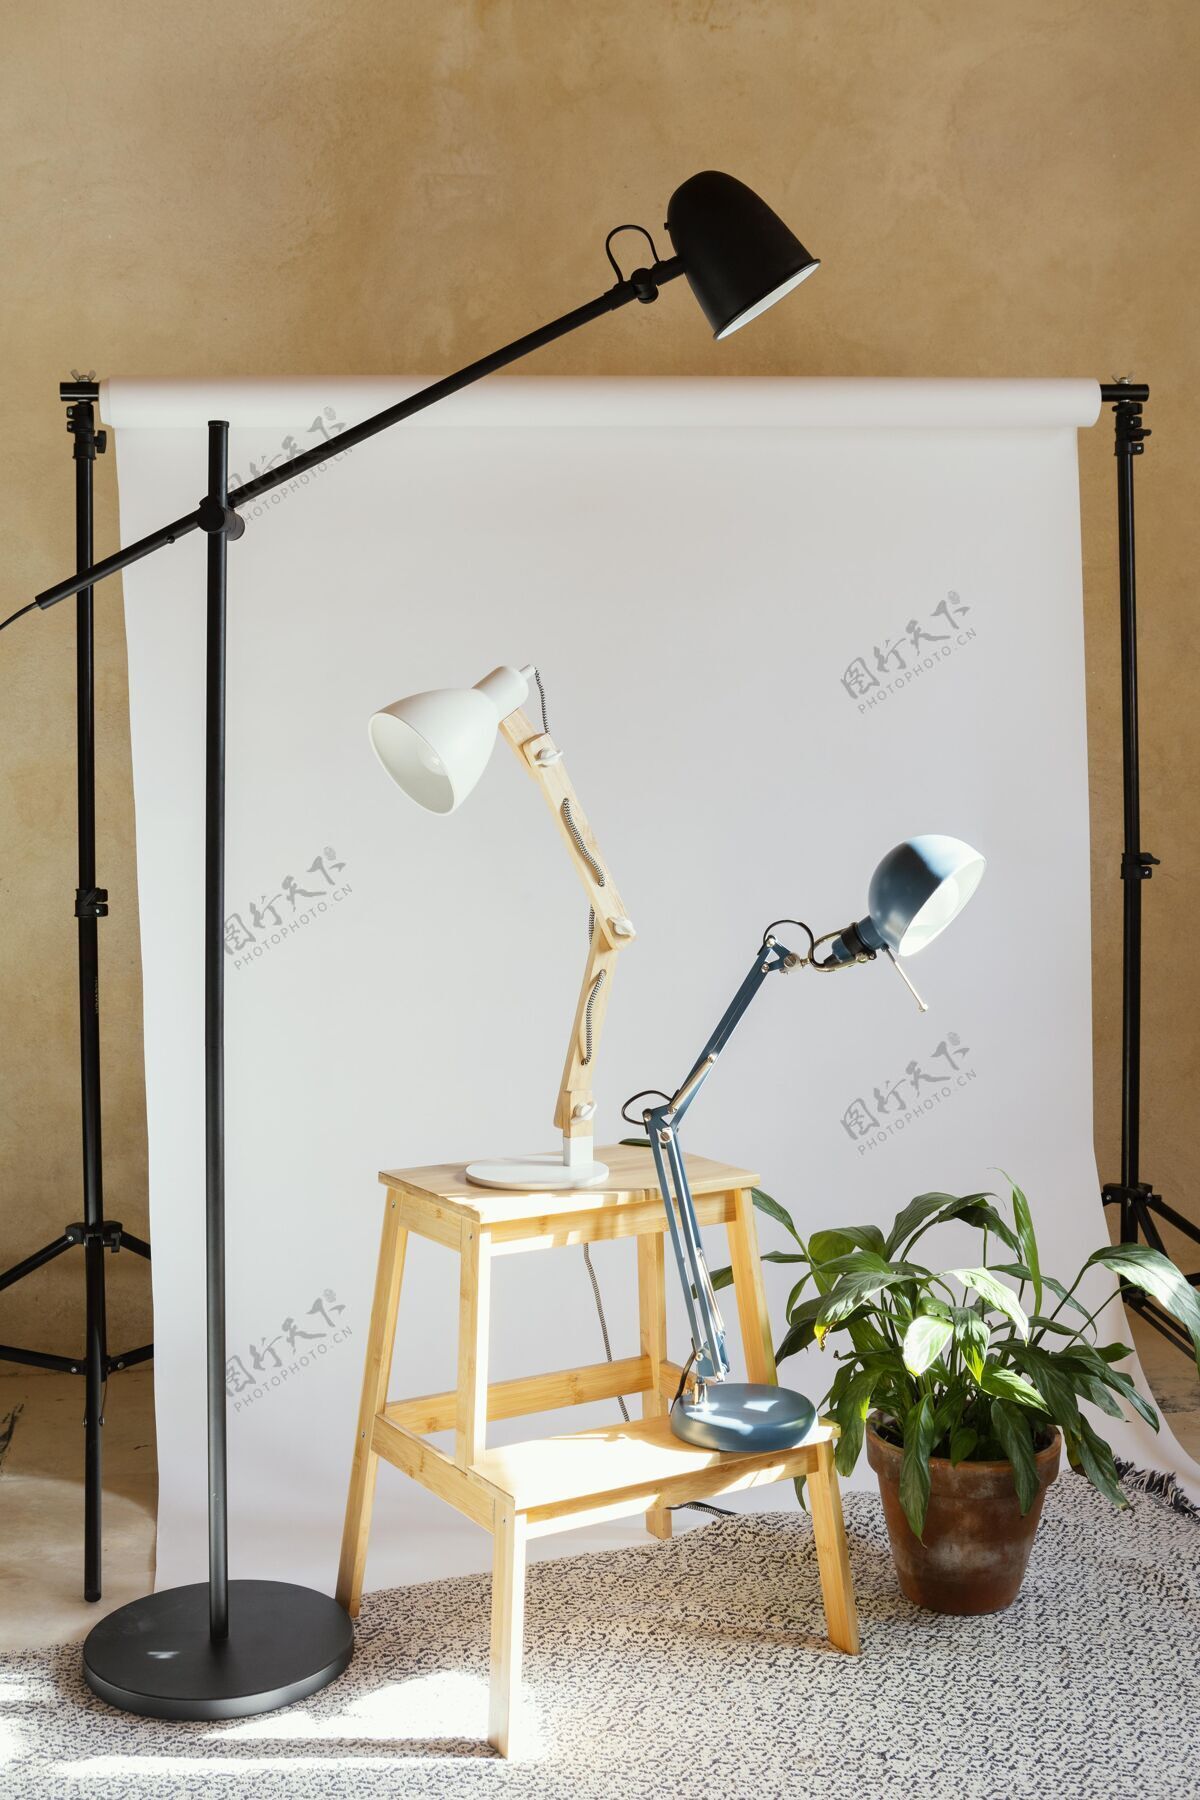 灯摄影用道具工作室工具艺术家工作室摄影